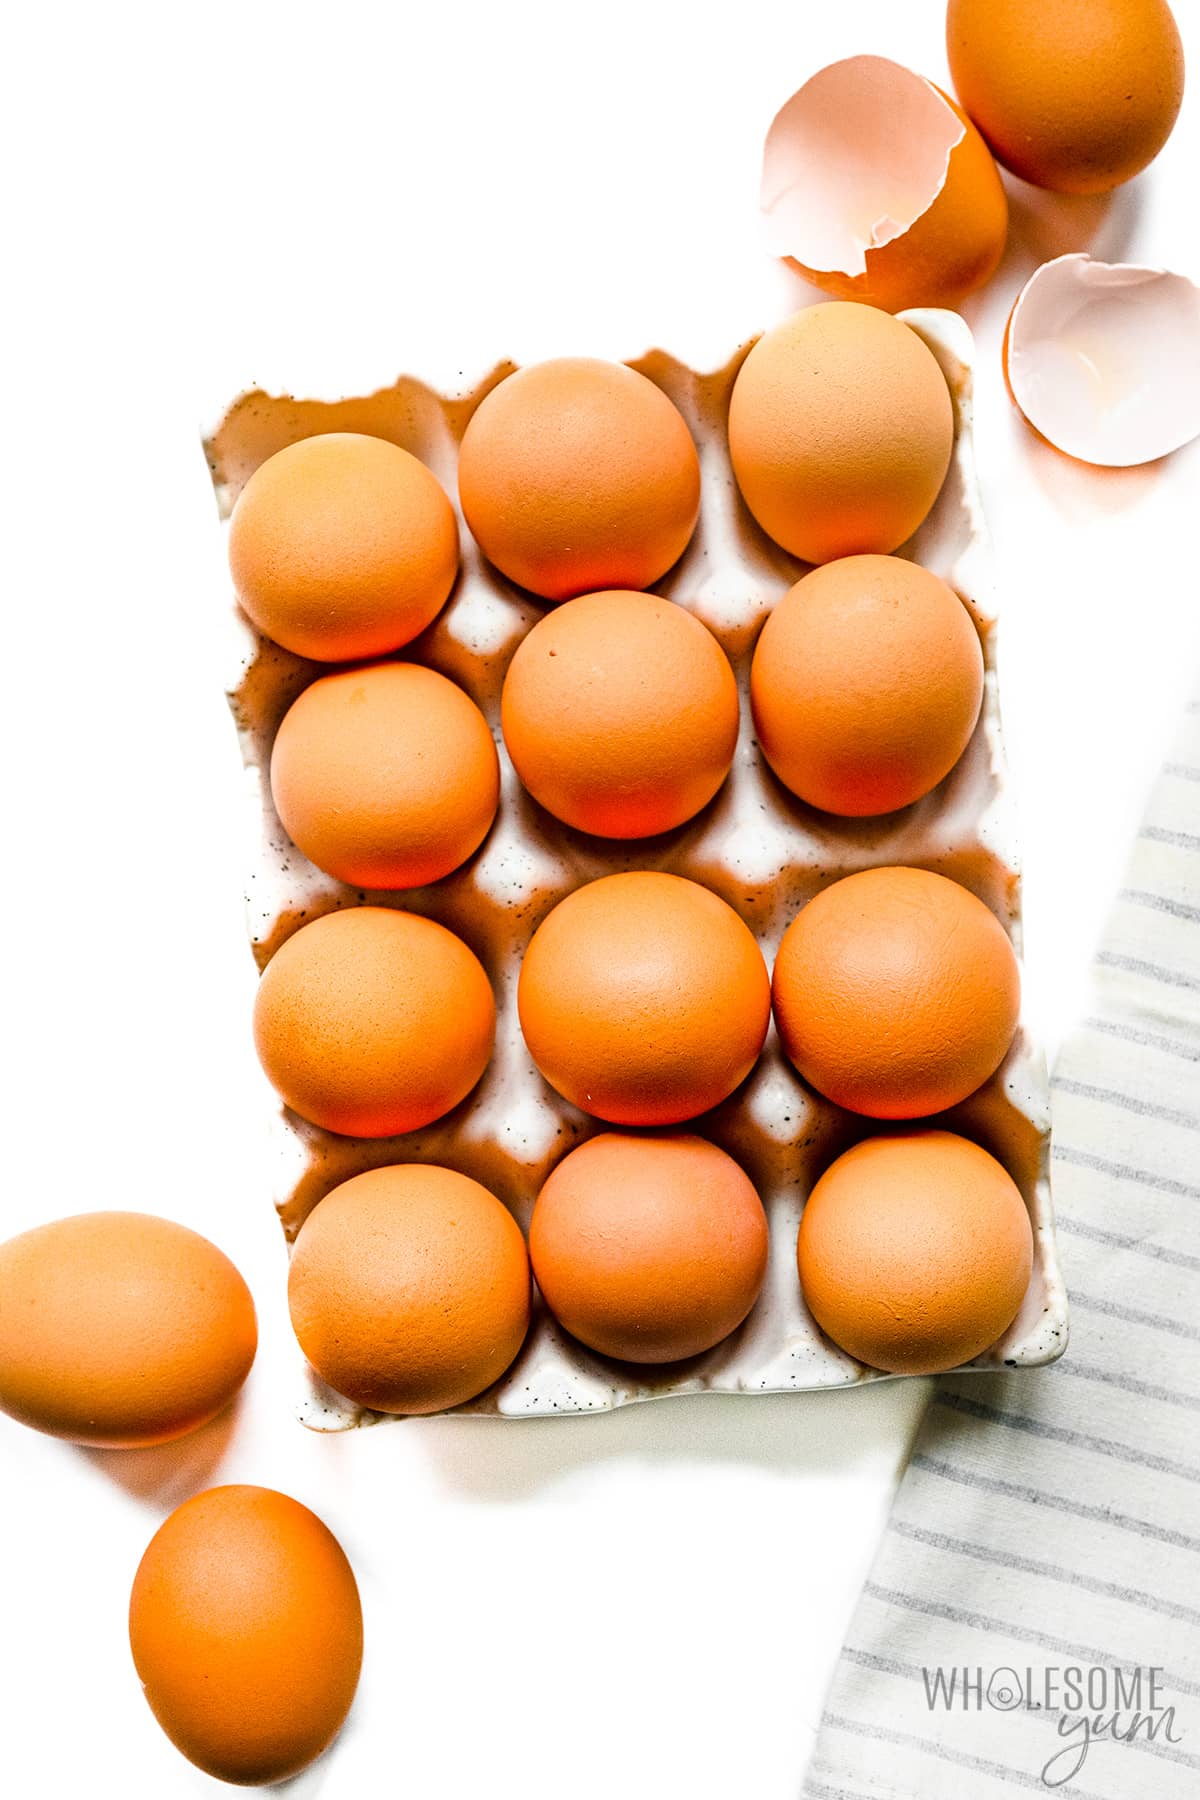 Eggs arranged in a carton.